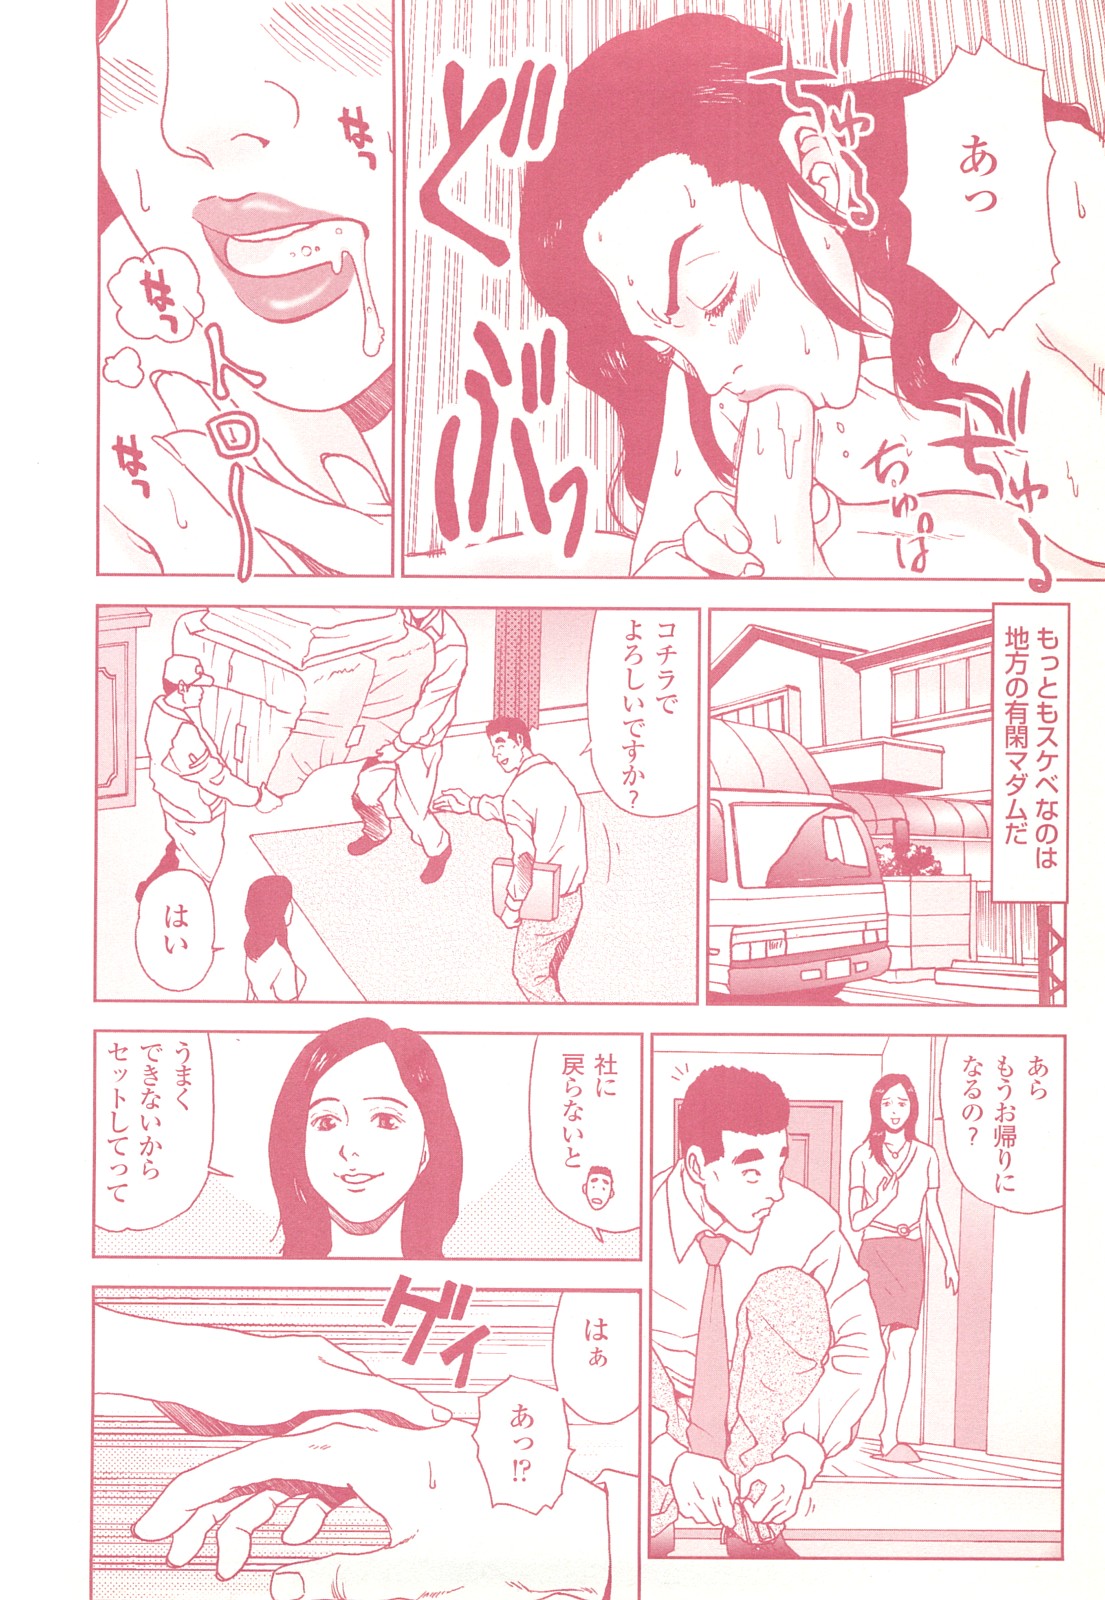 コミック裏モノJAPAN Vol.18 今井のりたつスペシャル号 